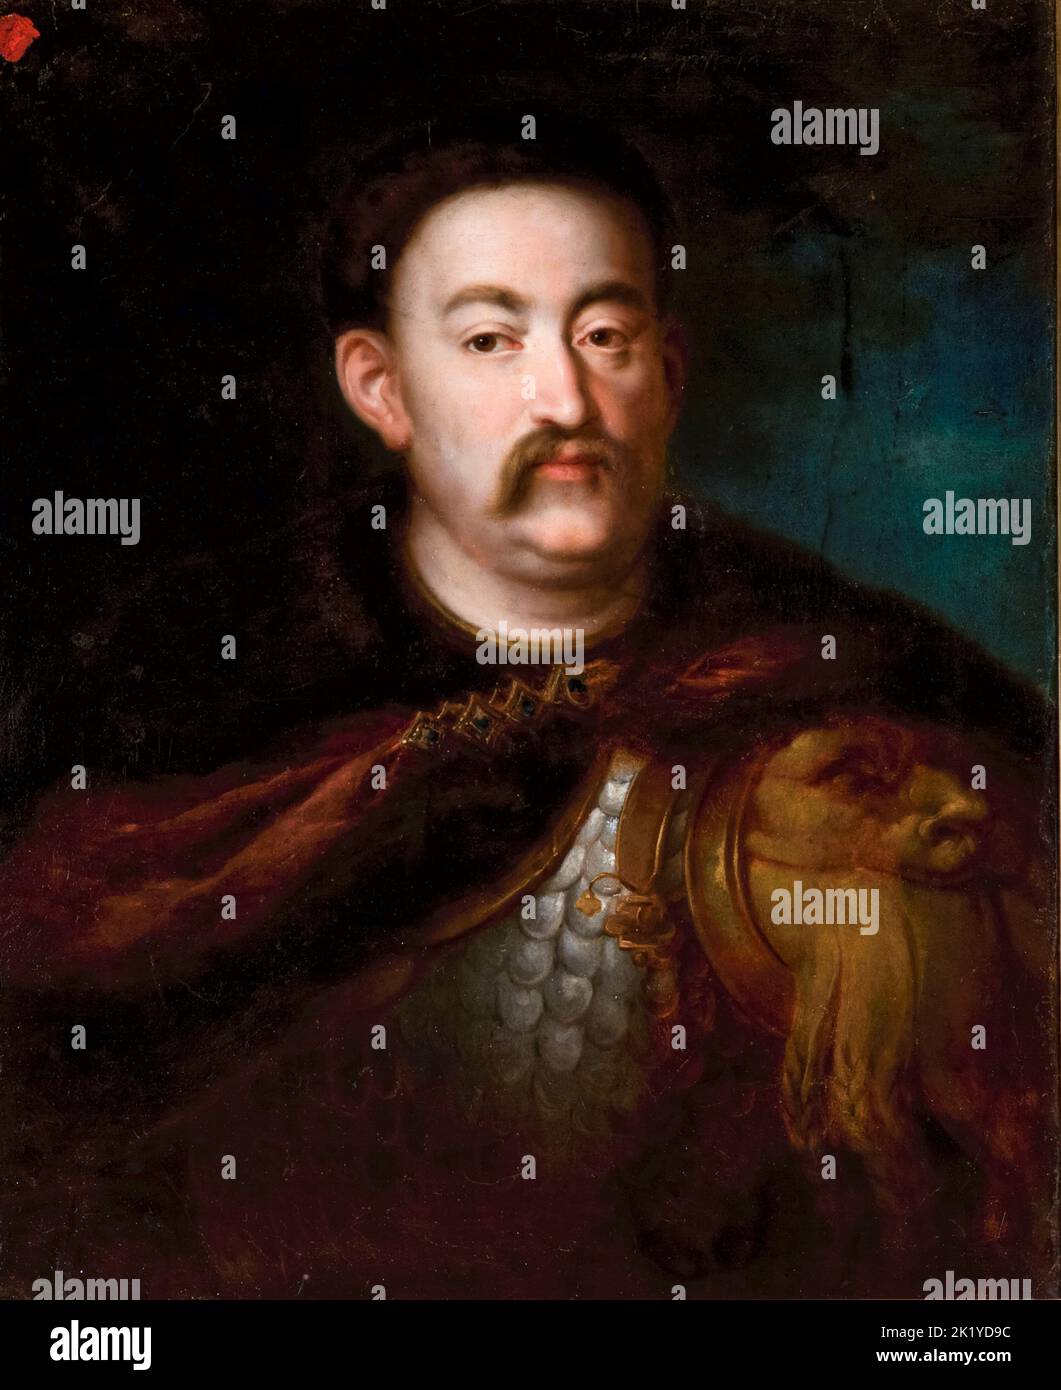 Juan III Sobieski (1629-1696), rey de Polonia y gran duque de Lituania (1674-1696), retrato al óleo sobre papel de Rafał Hadziewicz, 1834-1839 Foto de stock